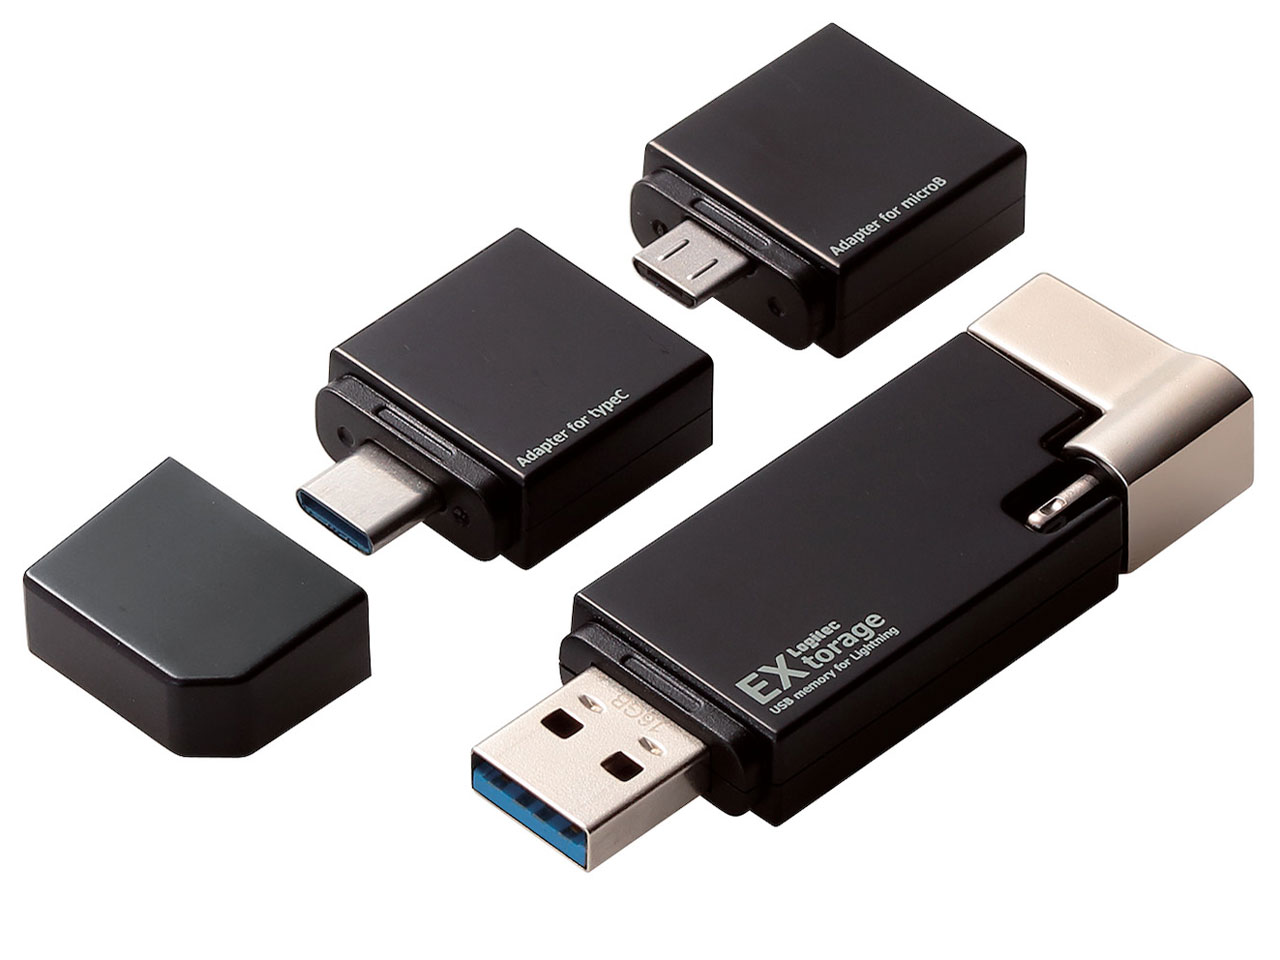 【楽天スーパーSALE期間限定価格】ロジテック LightningUSBメモリ/USB3.1(Gen1)/USB3.0対応/16GB/microUSB変換アダプタ+Type-C変換アダプタ付 LMF-LGU3A016GBK